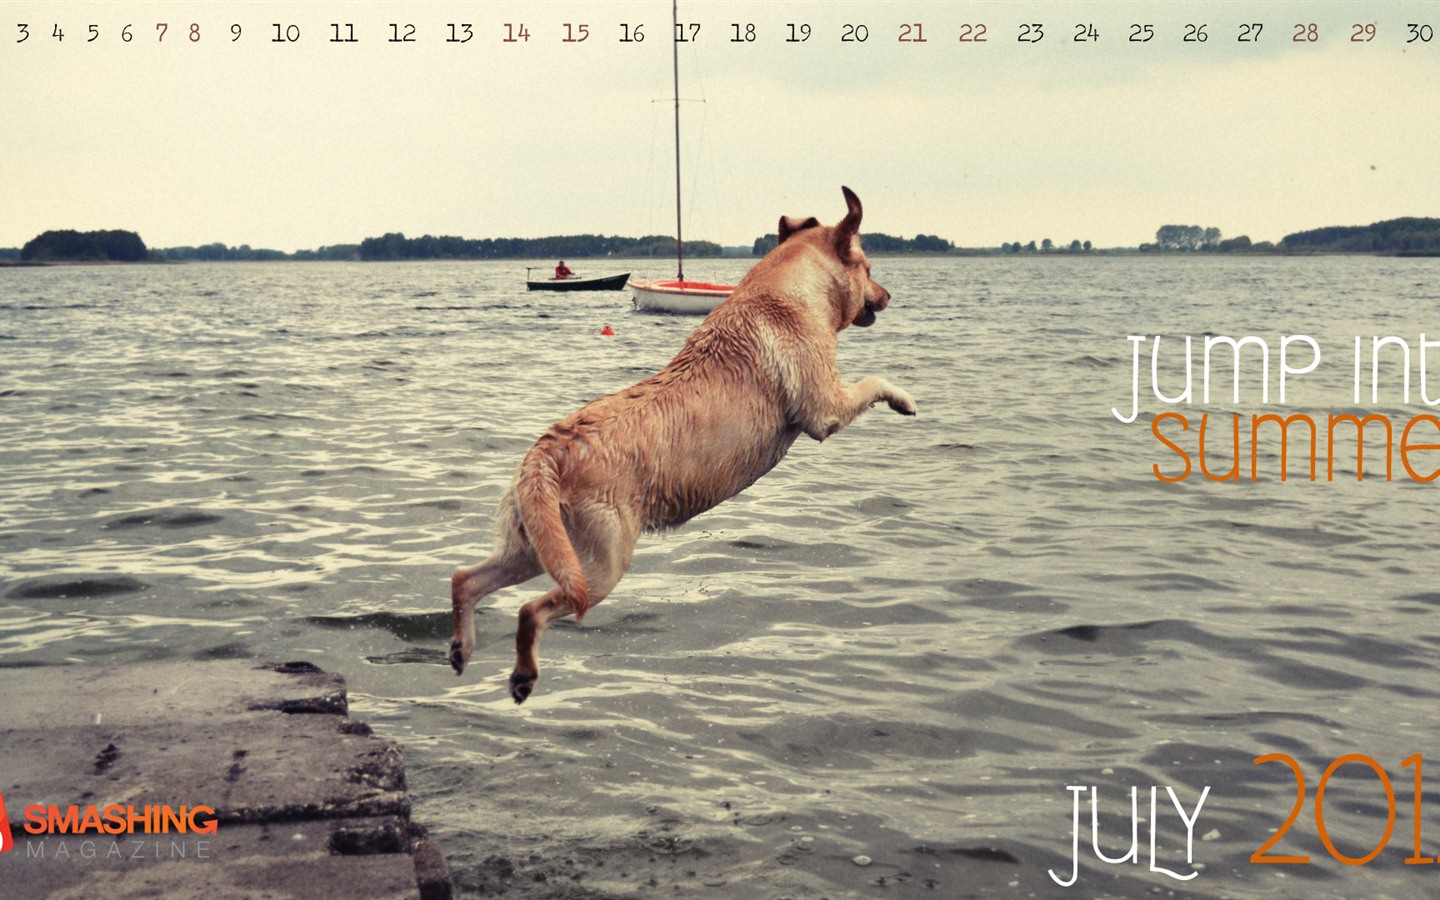 July 2012 Calendar wallpapers (1) #20 - 1440x900